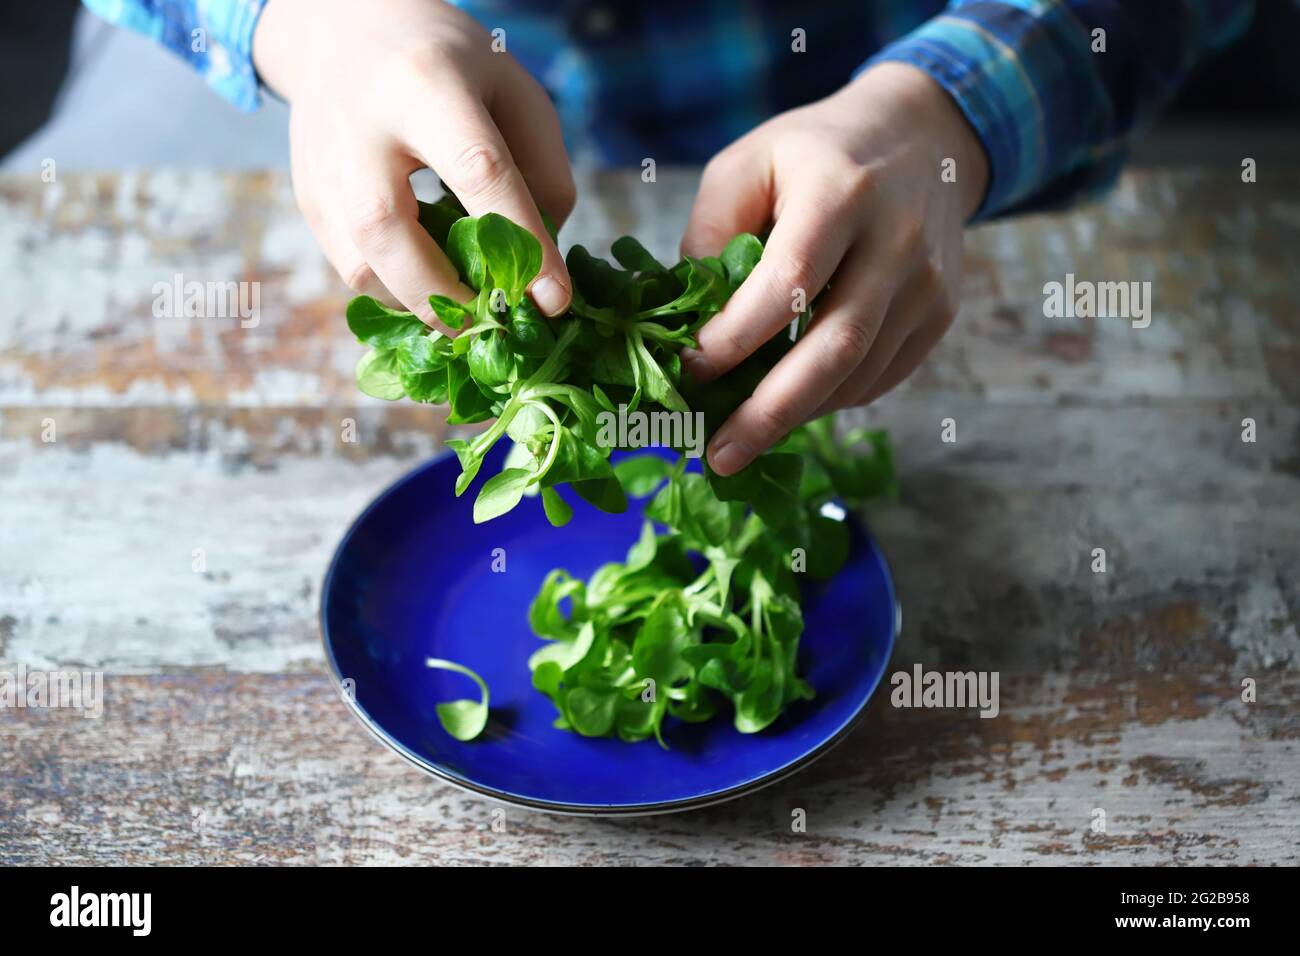 Les mains des hommes tiennent une salade verte. Concept d'alimentation saine. Écrasez la salade dans une assiette bleue. Banque D'Images